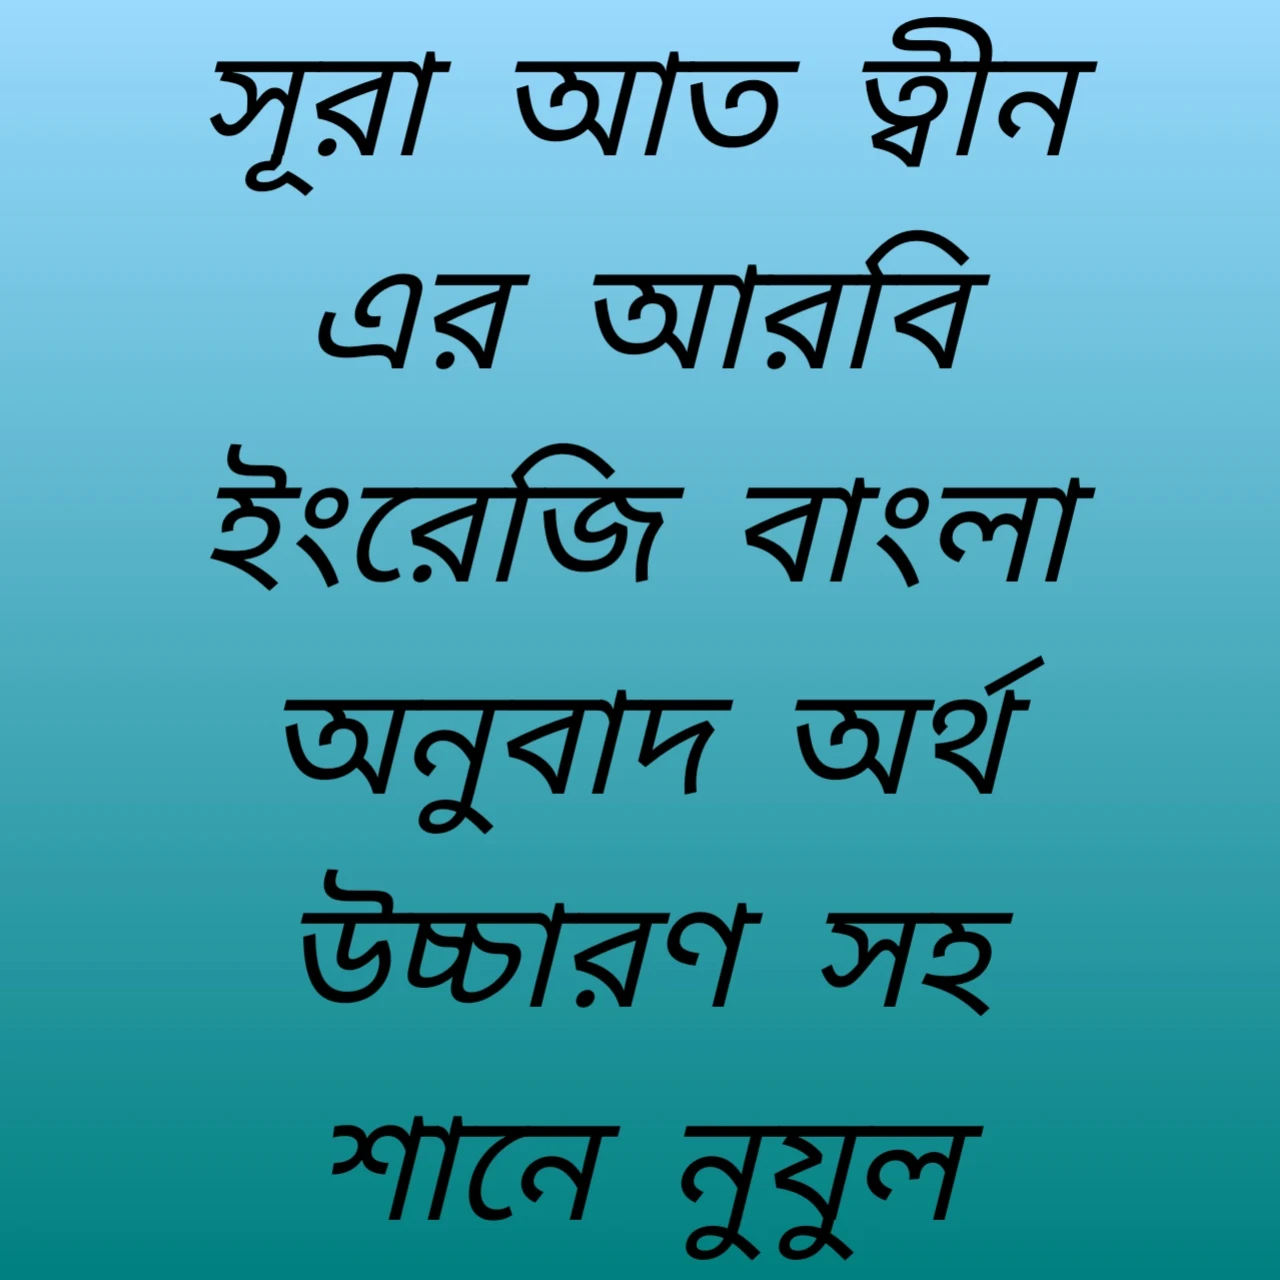 সূরা আত ত্বীন এর আরবি ইংরেজি বাংলা অনুবাদ অর্থ উচ্চারণ সহ শানে নুযুল Surah-Tim's Tarrior English Bangla Translate Meaning with Shannuf's Nunul |